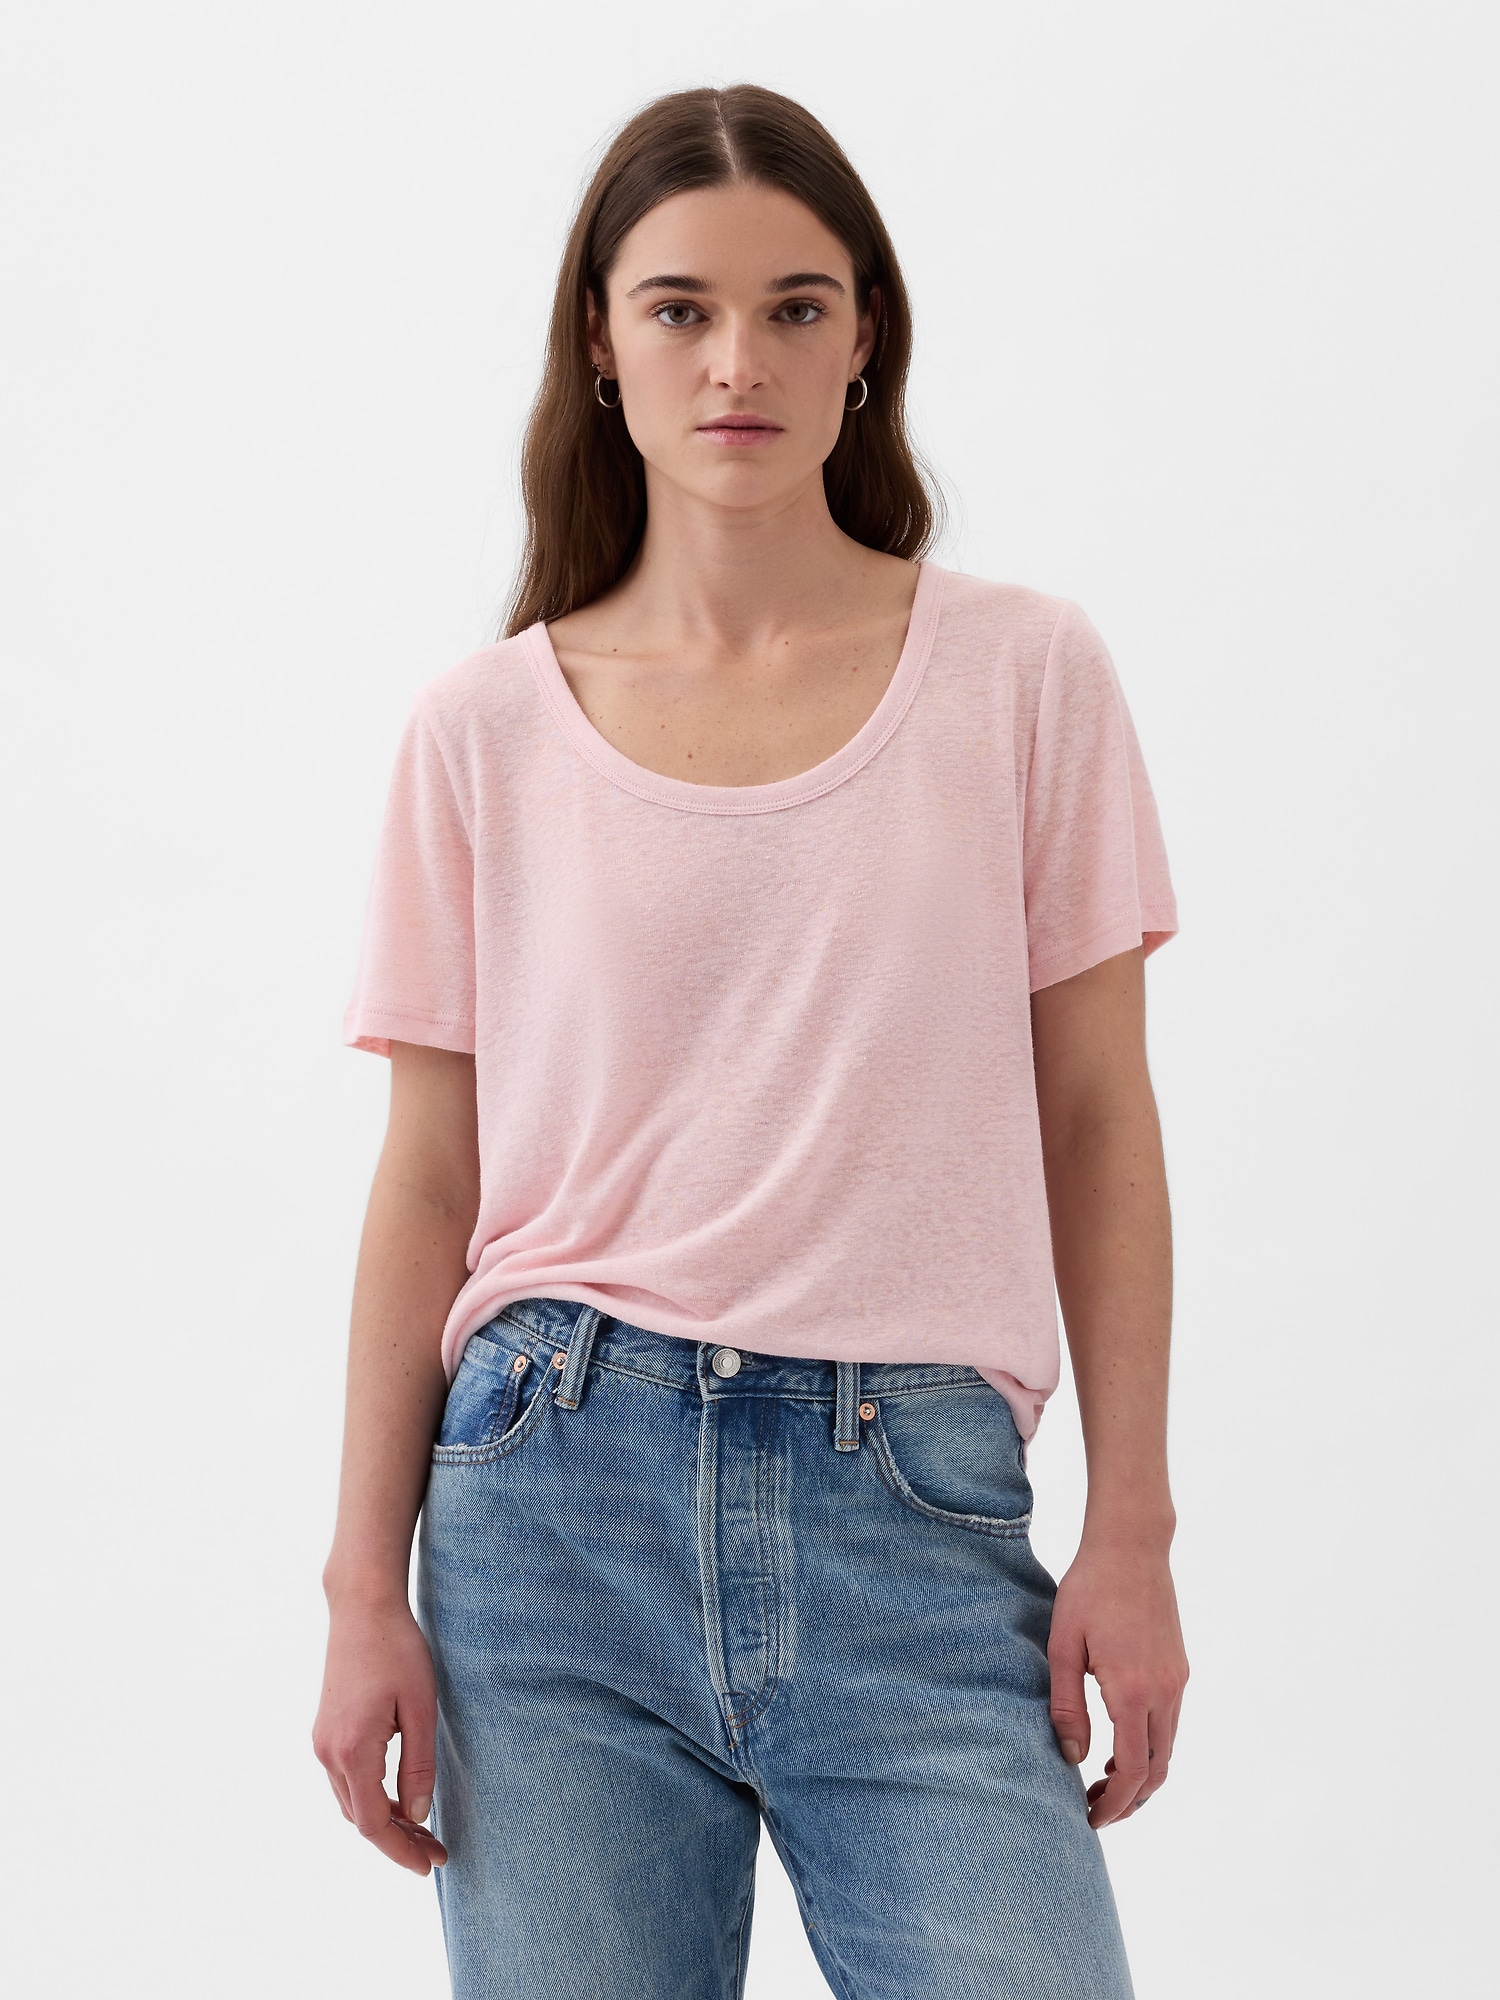 GAP Linen T-shirt - Women